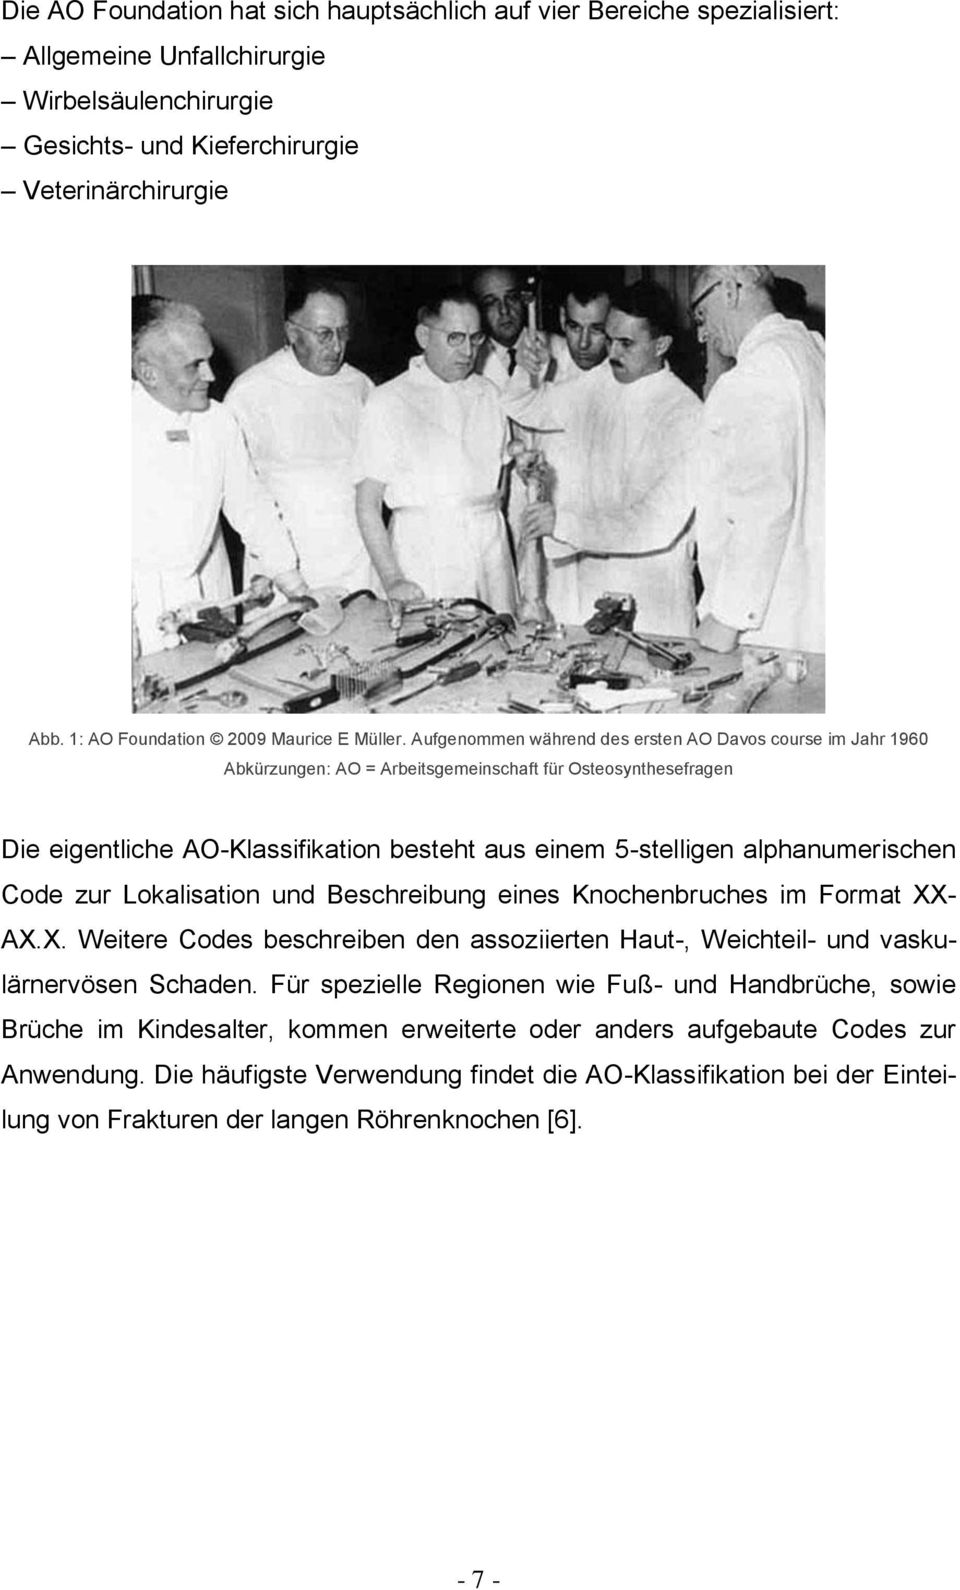 Aufgenommen während des ersten AO Davos course im Jahr 1960 Abkürzungen: AO = Arbeitsgemeinschaft für Osteosynthesefragen Die eigentliche AO-Klassifikation besteht aus einem 5-stelligen